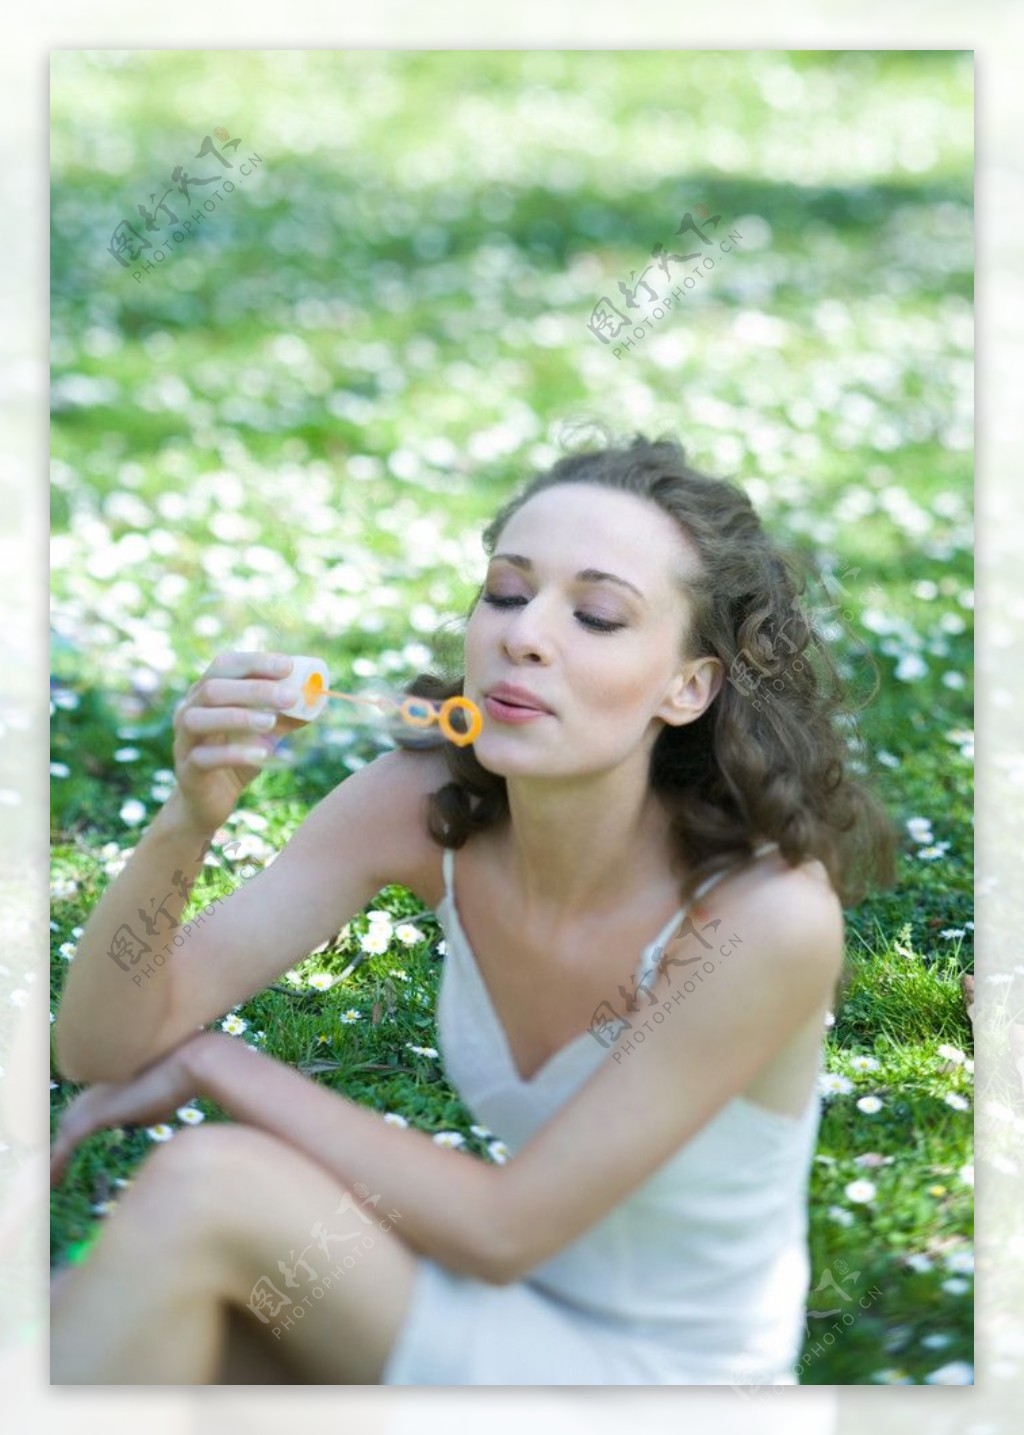 坐在绿草地上吹泡泡的快乐美女图片